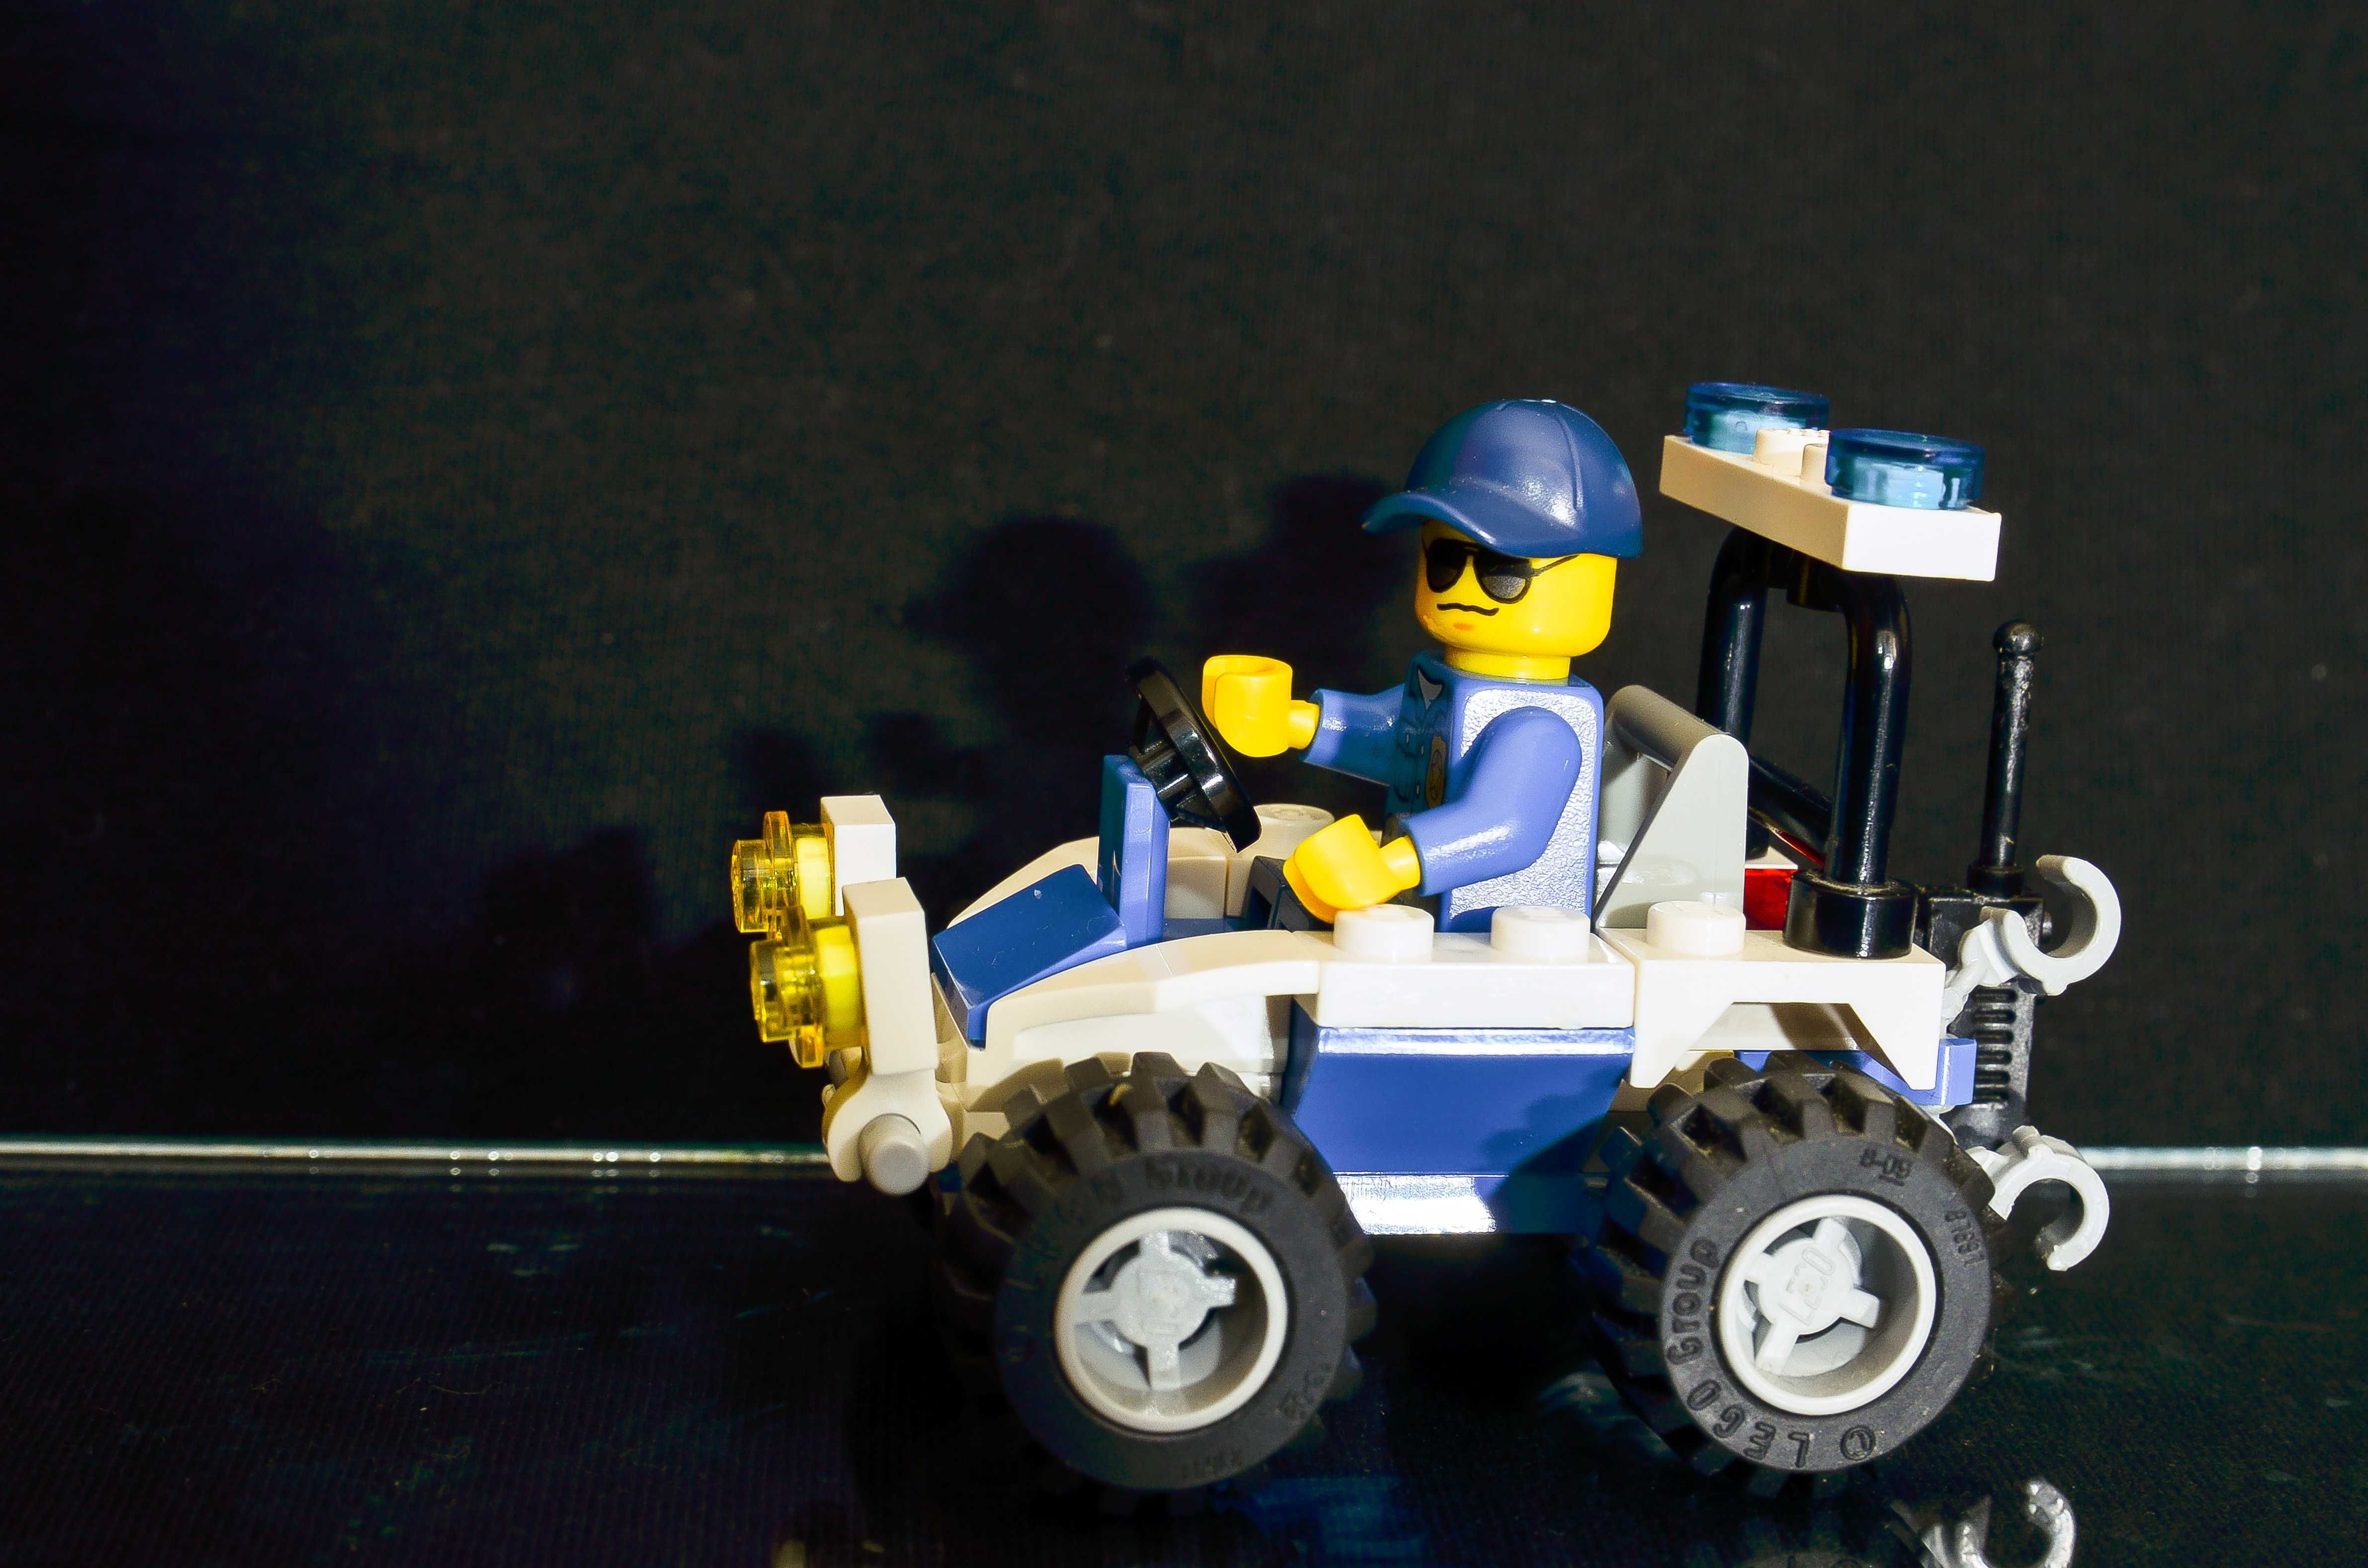 LEGO City 30228 Quad policyjny